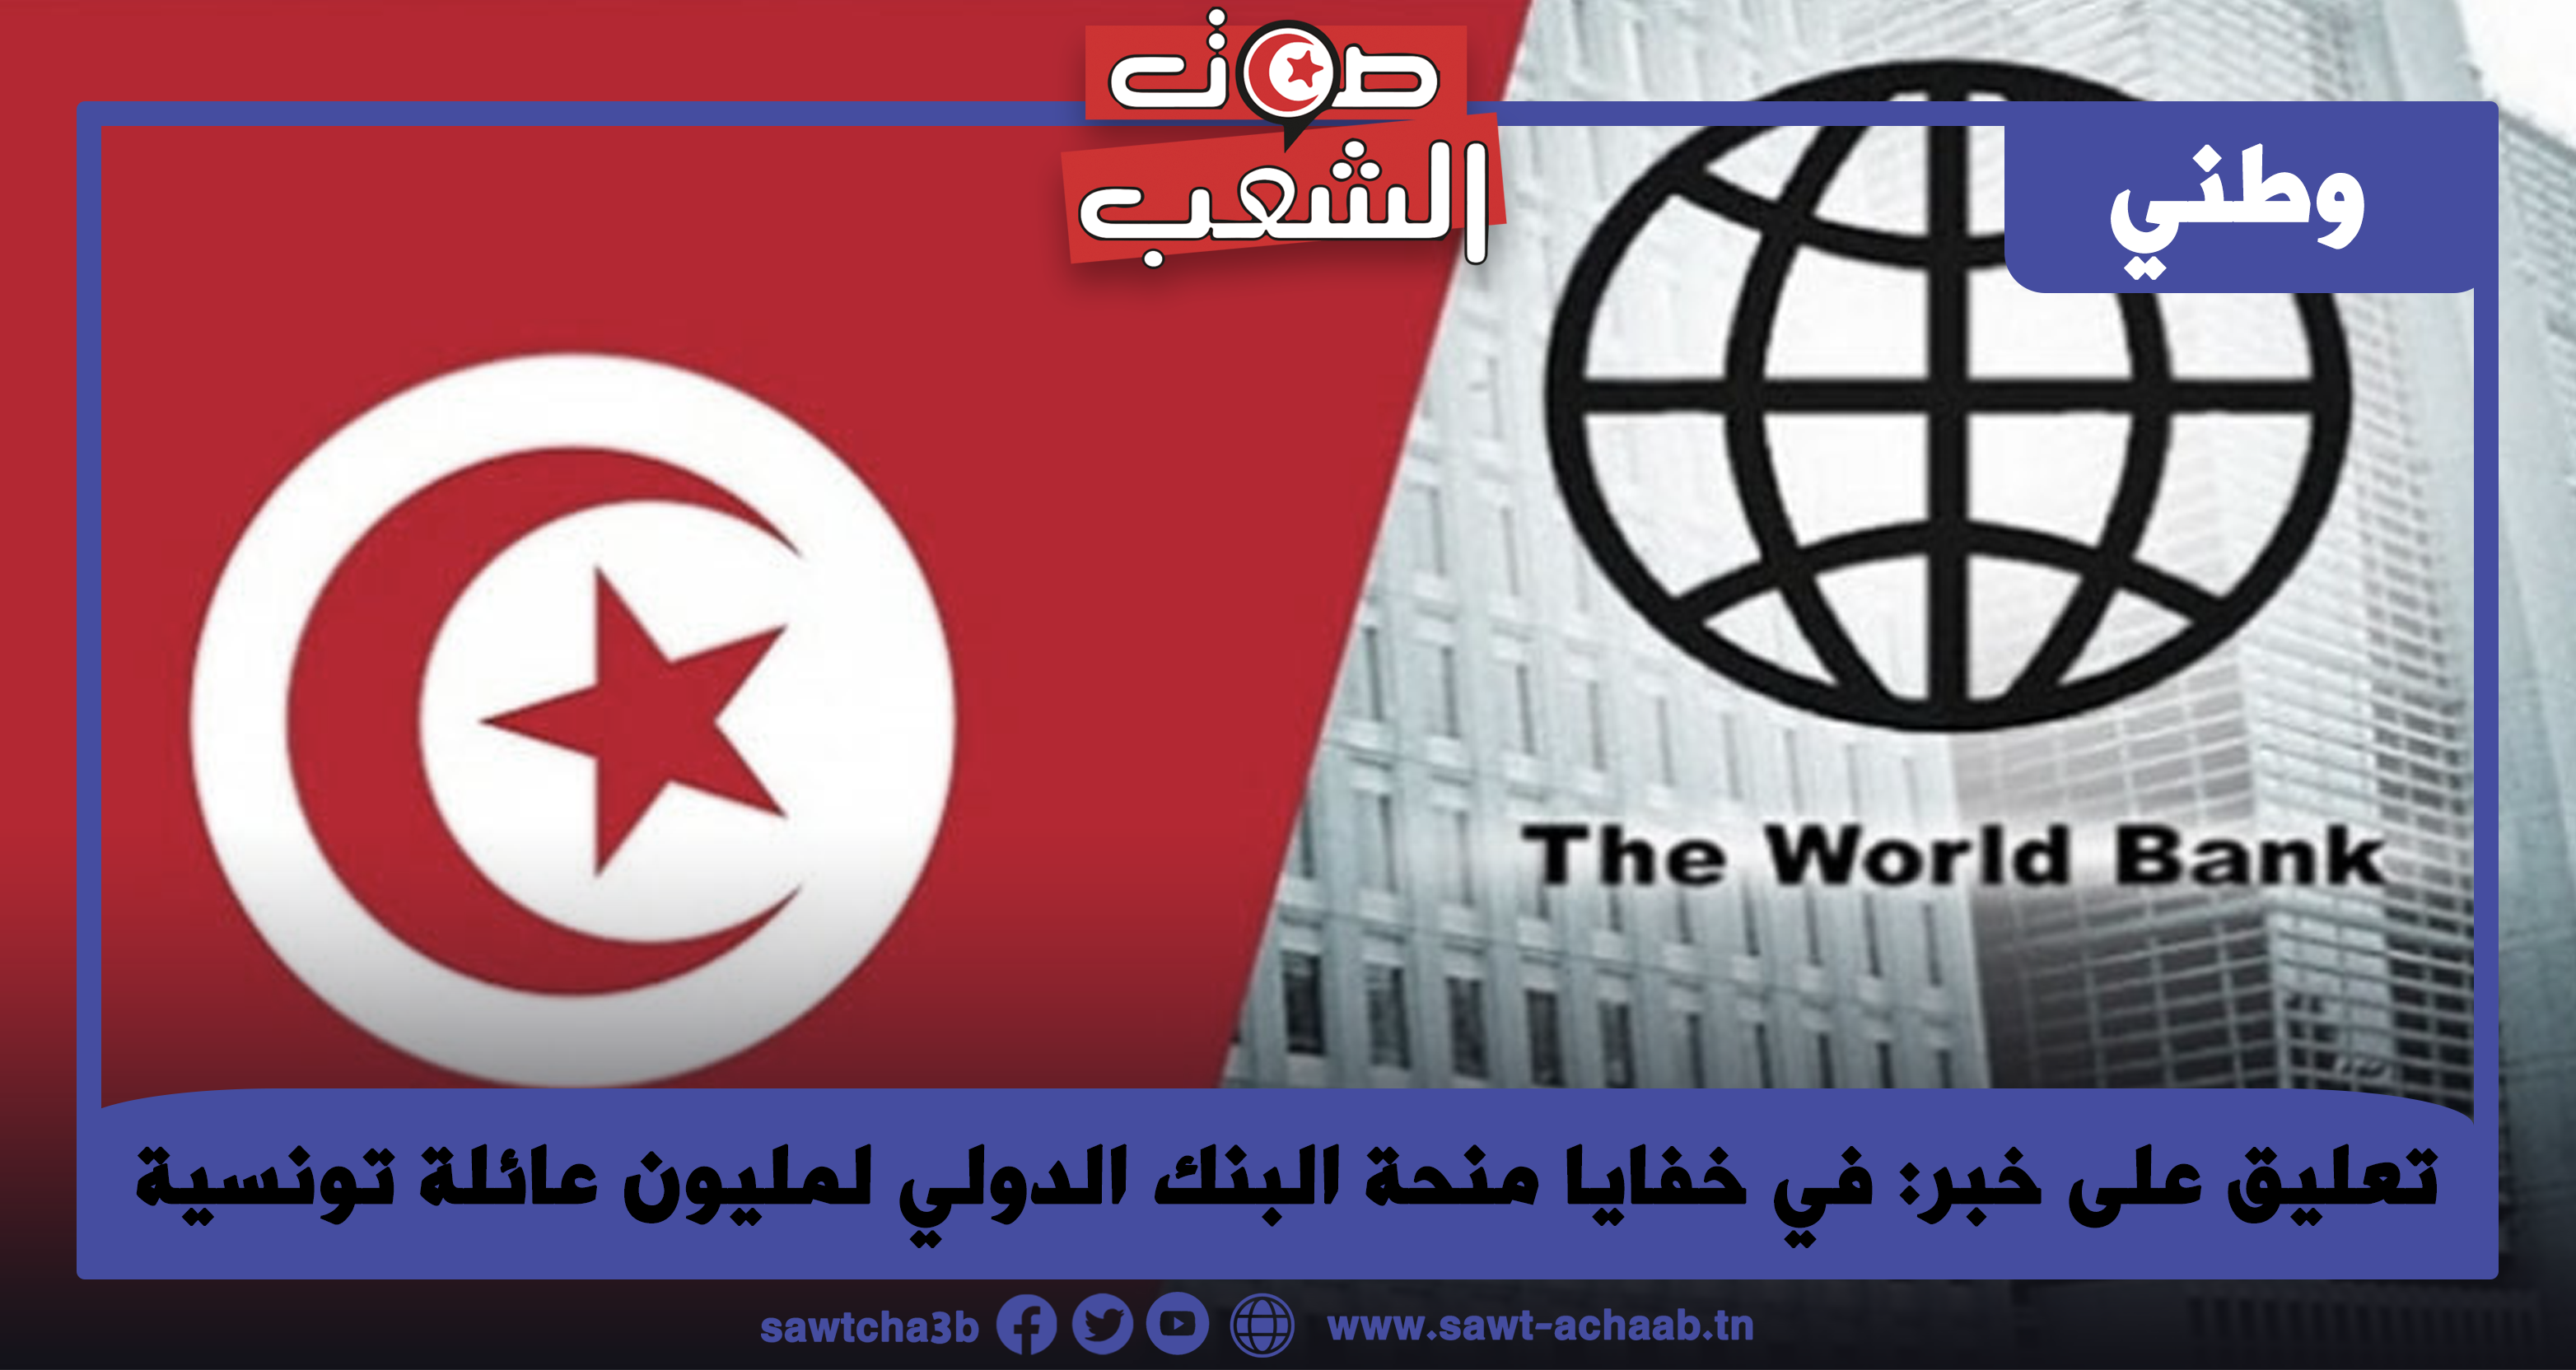 تعليق على خبر: في خفايا منحة البنك الدولي لمليون عائلة تونسية